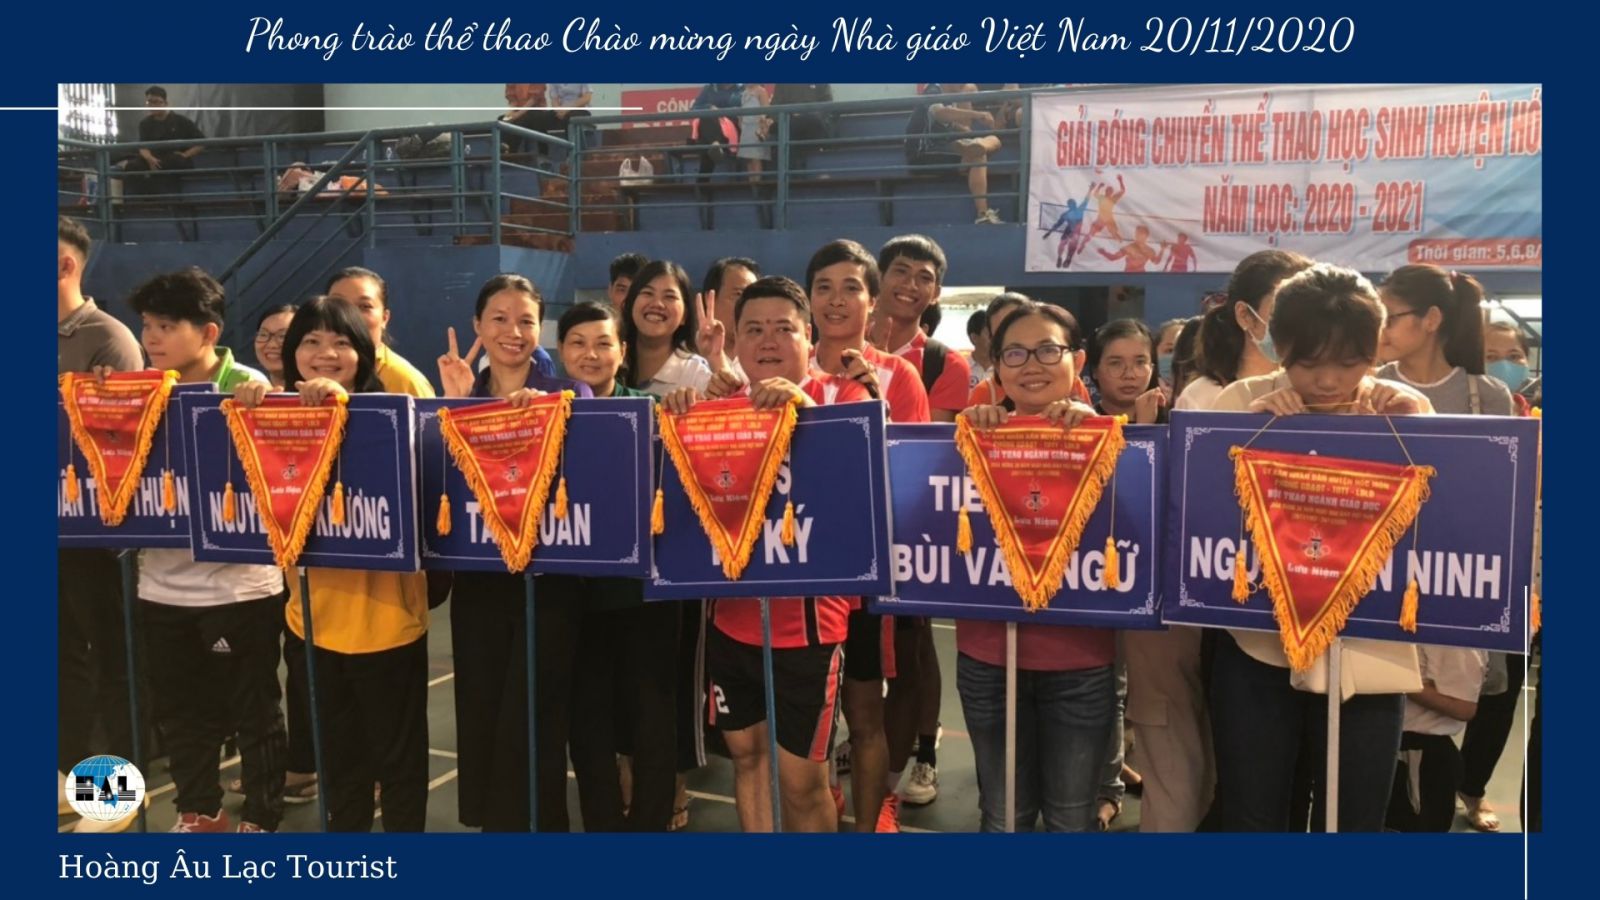 Hoàng Âu lạc và Phong trào thể thao Chào mừng ngày Nhà giáo Việt Nam 20/11/2020